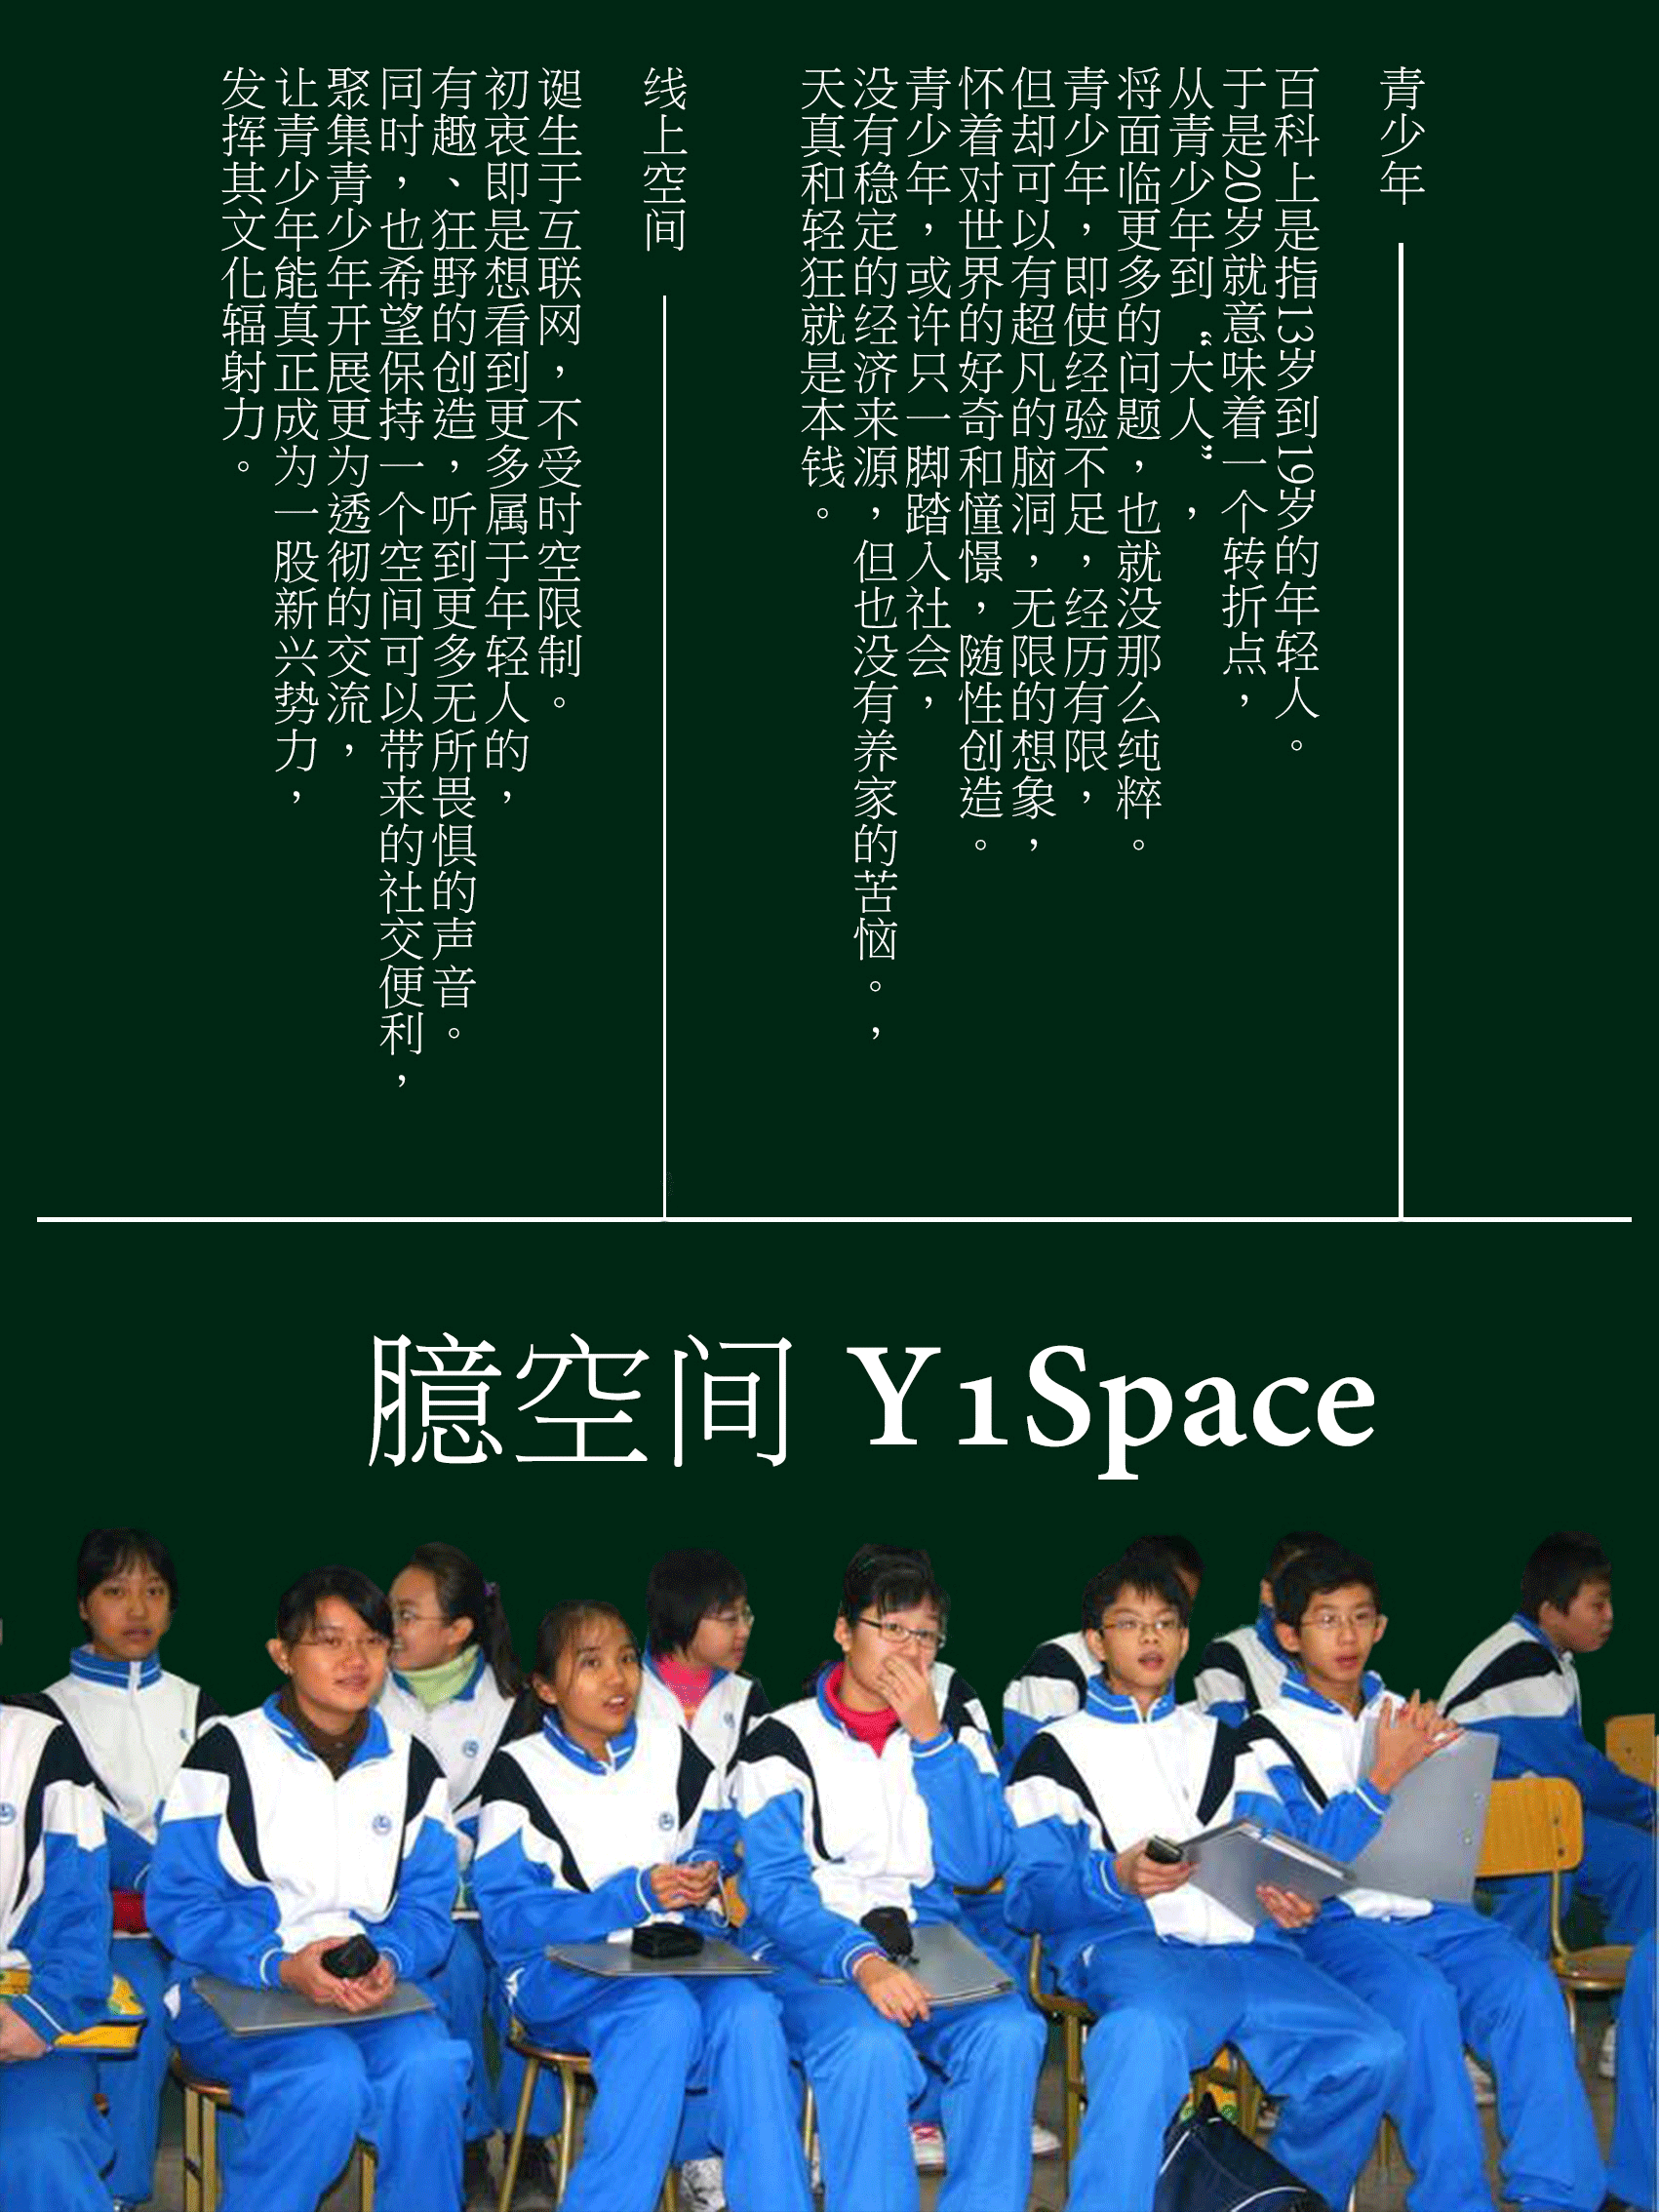 扫描 二维码 关注 臆空间Y1Space的公众号